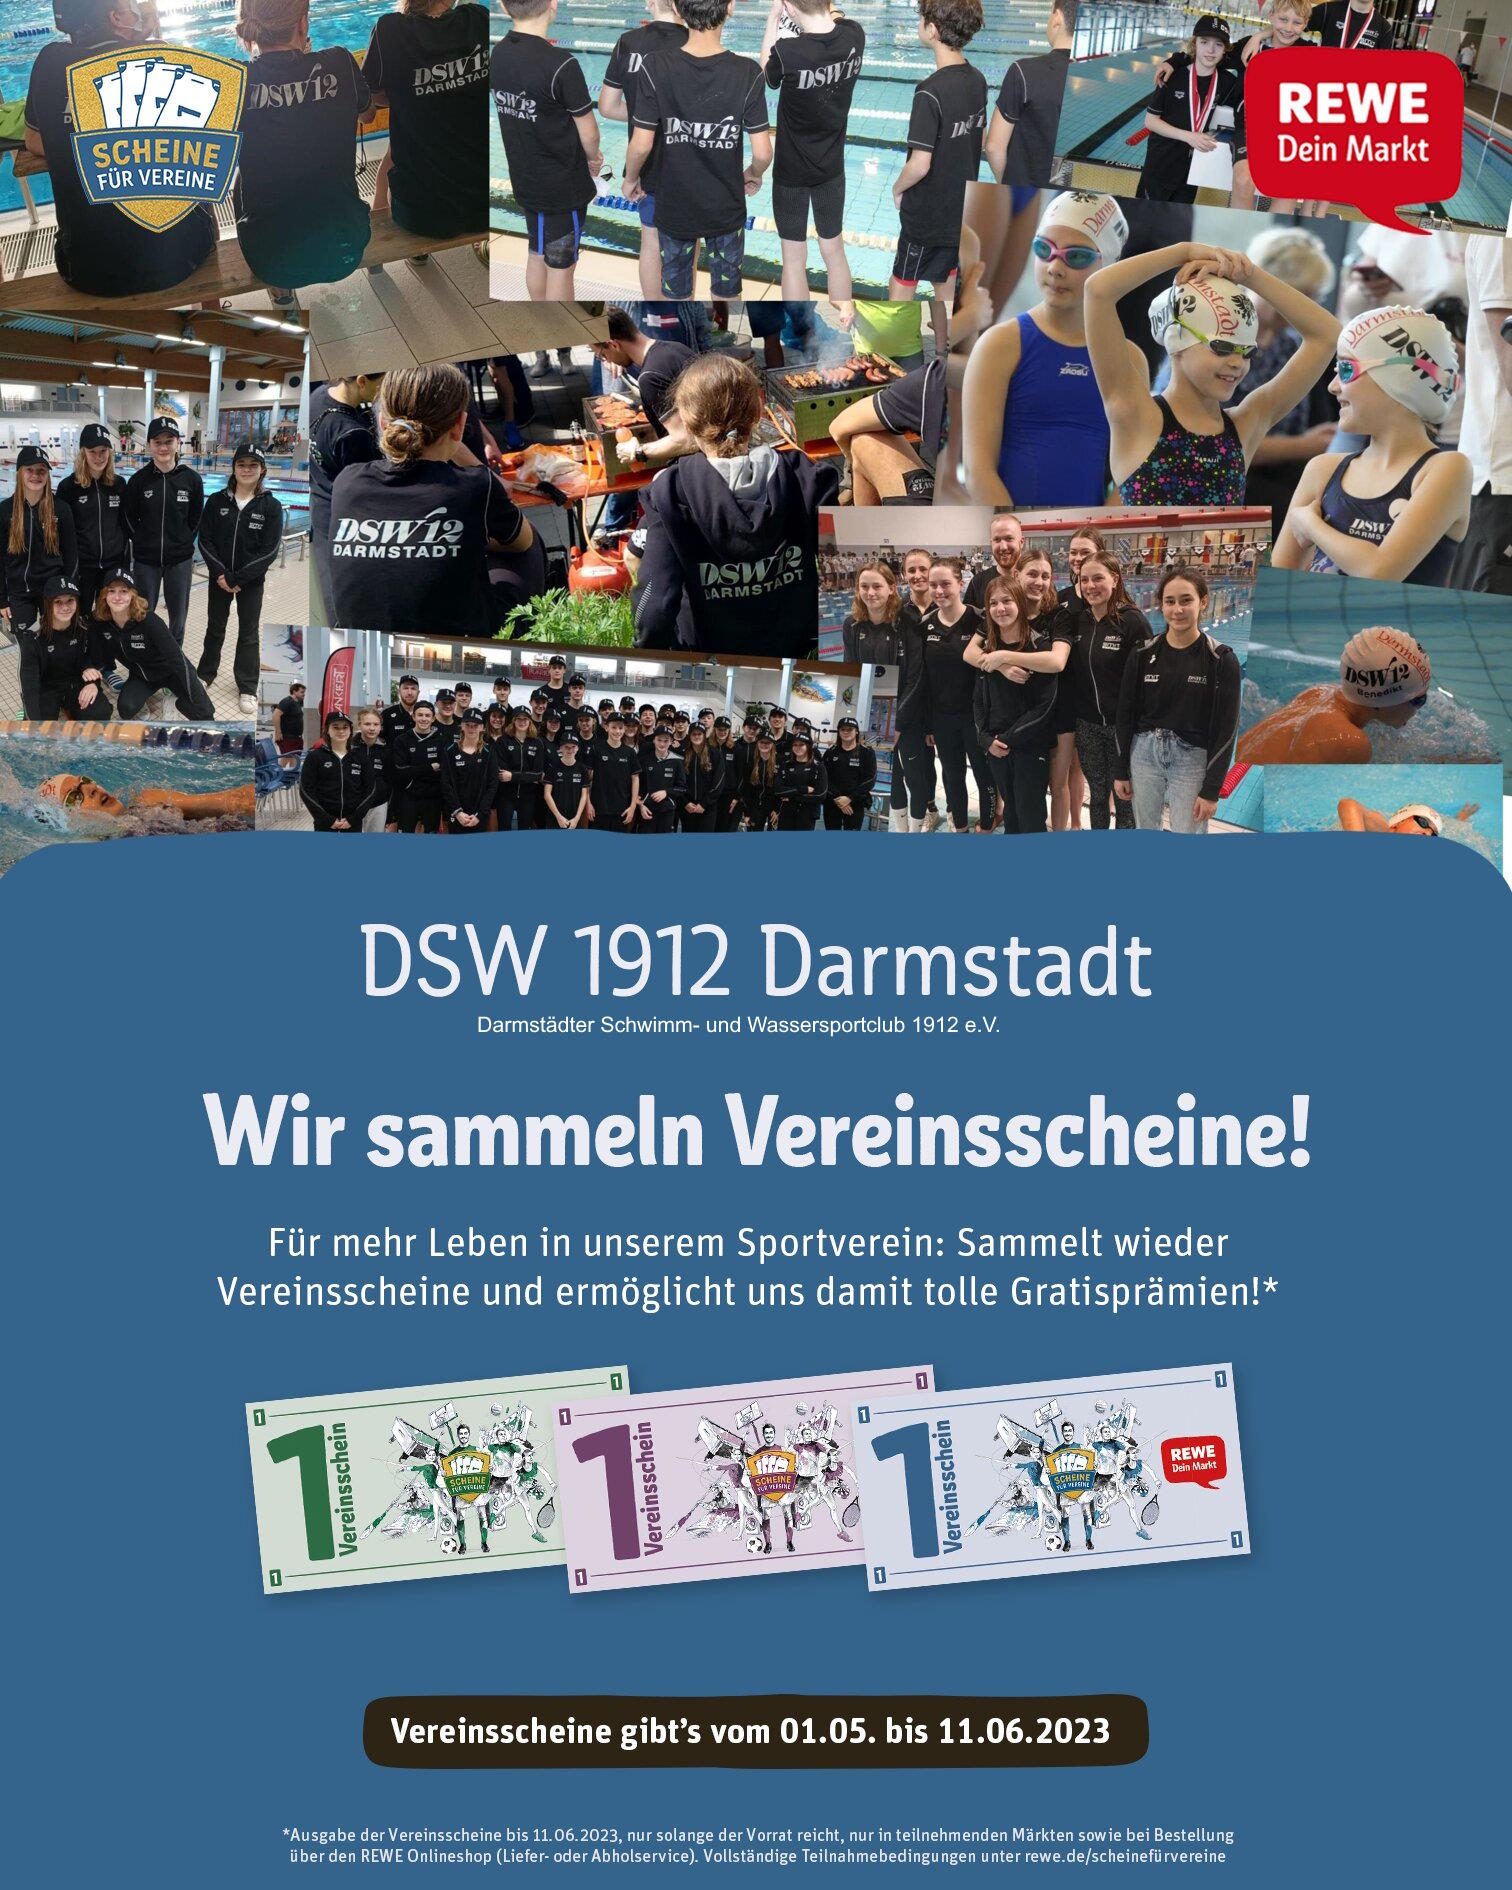 DSW_1912_REWE_Scheine-fuer-Vereine